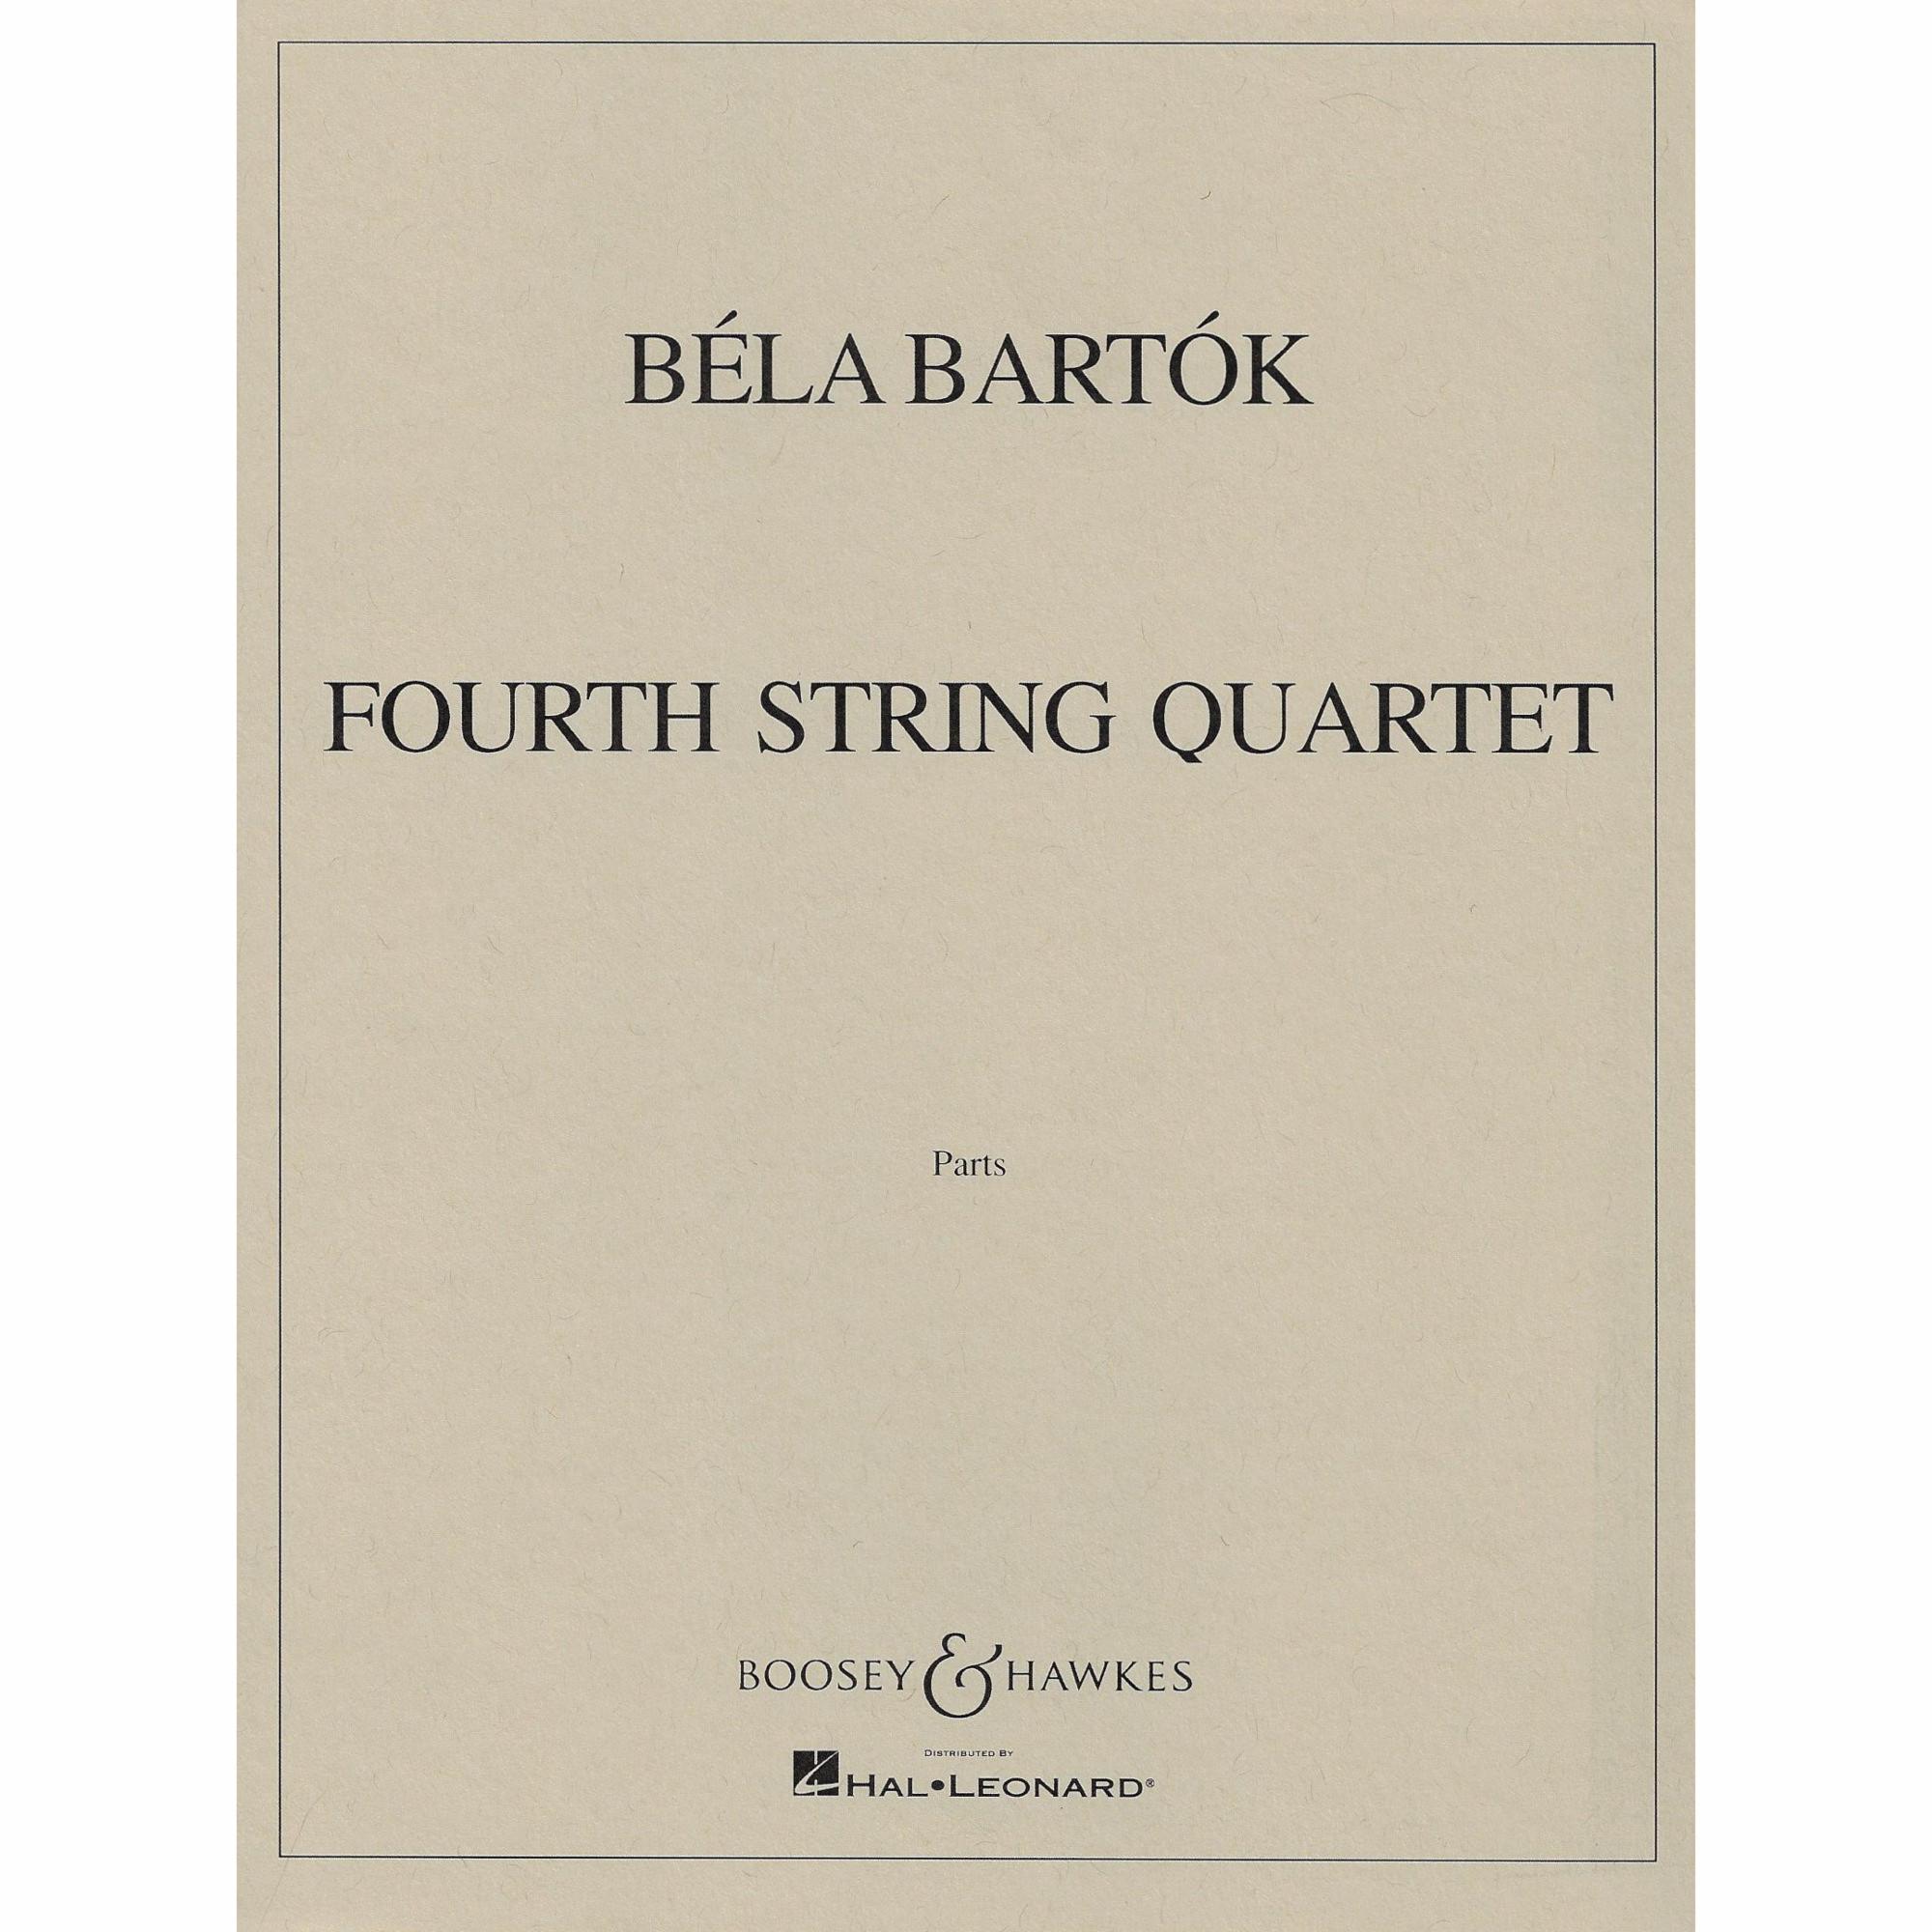 Bartok -- Fourth String Quartet